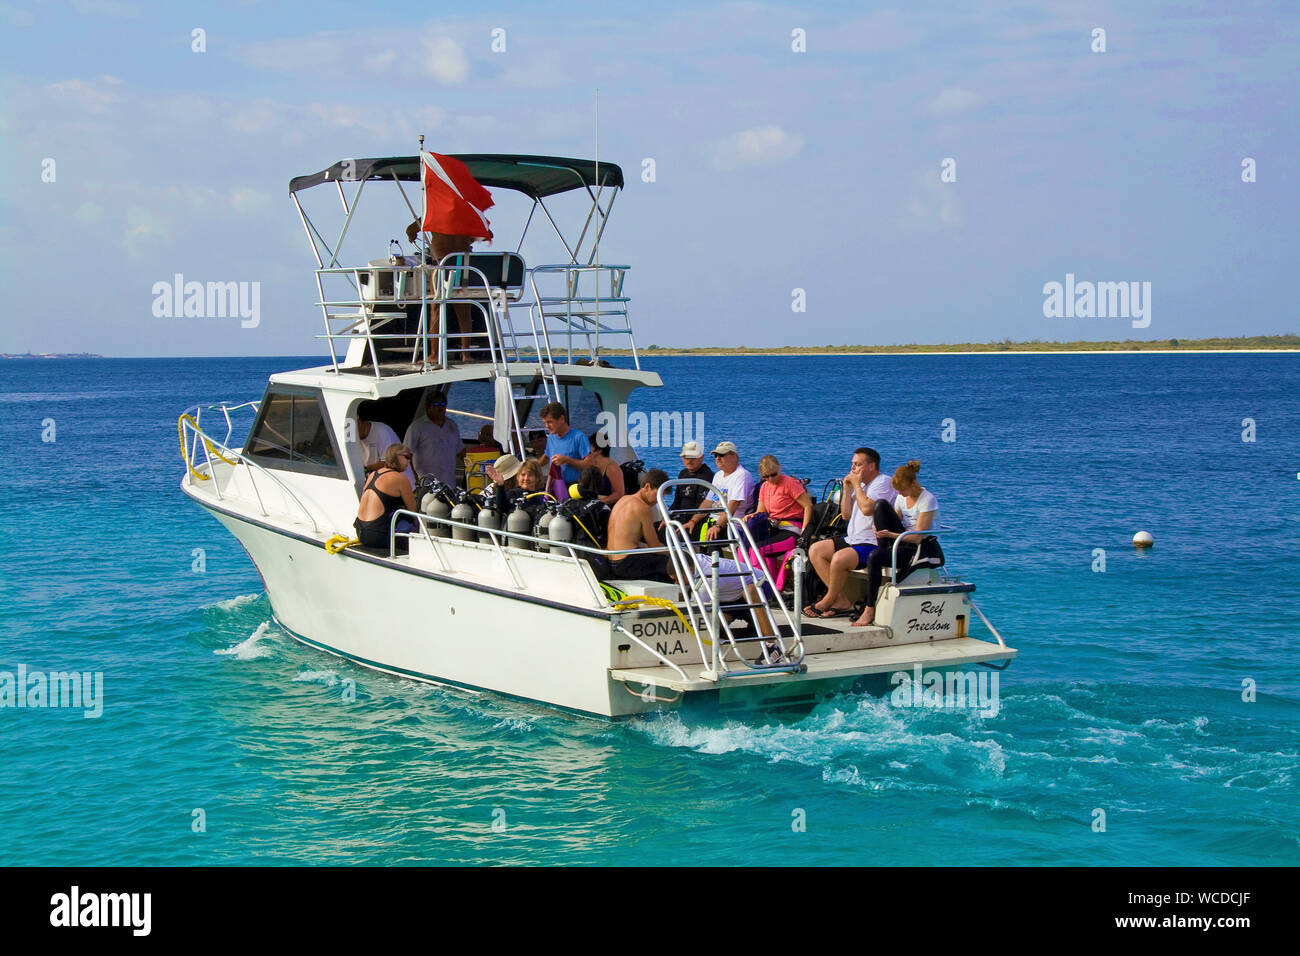 Tauchboot mit Scuba Diver, Boote Reise zu wenig Bonaire Captain Don's Habitat, Resort Tauchen hotel, Kralendijk, Bonaire, Niederländische Antillen Stockfoto